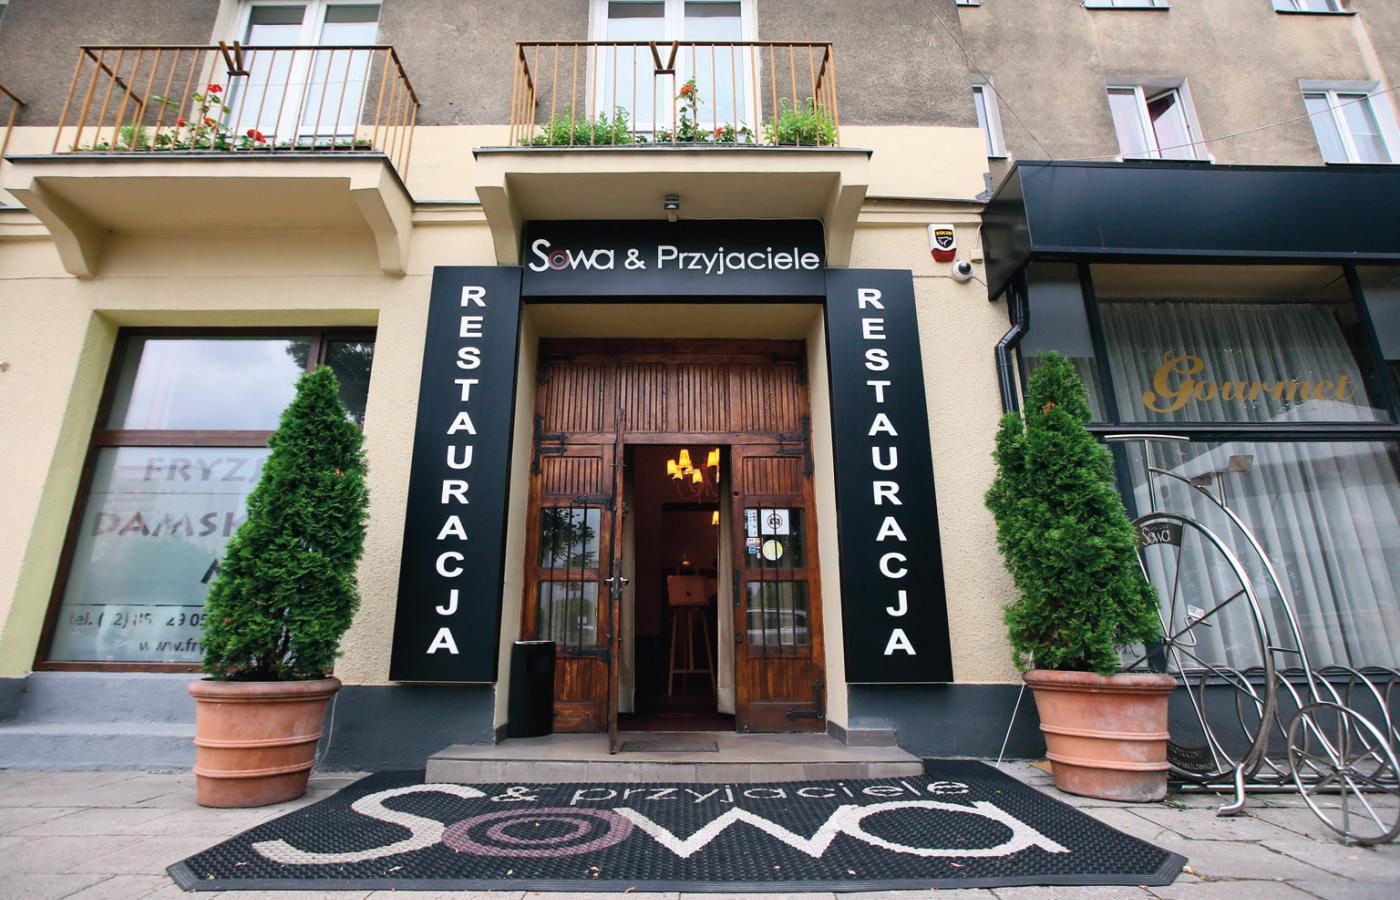 Restauracja Sowa & Przyjaciele zyskała sławę, ale czy teraz zyska nowych klientów?